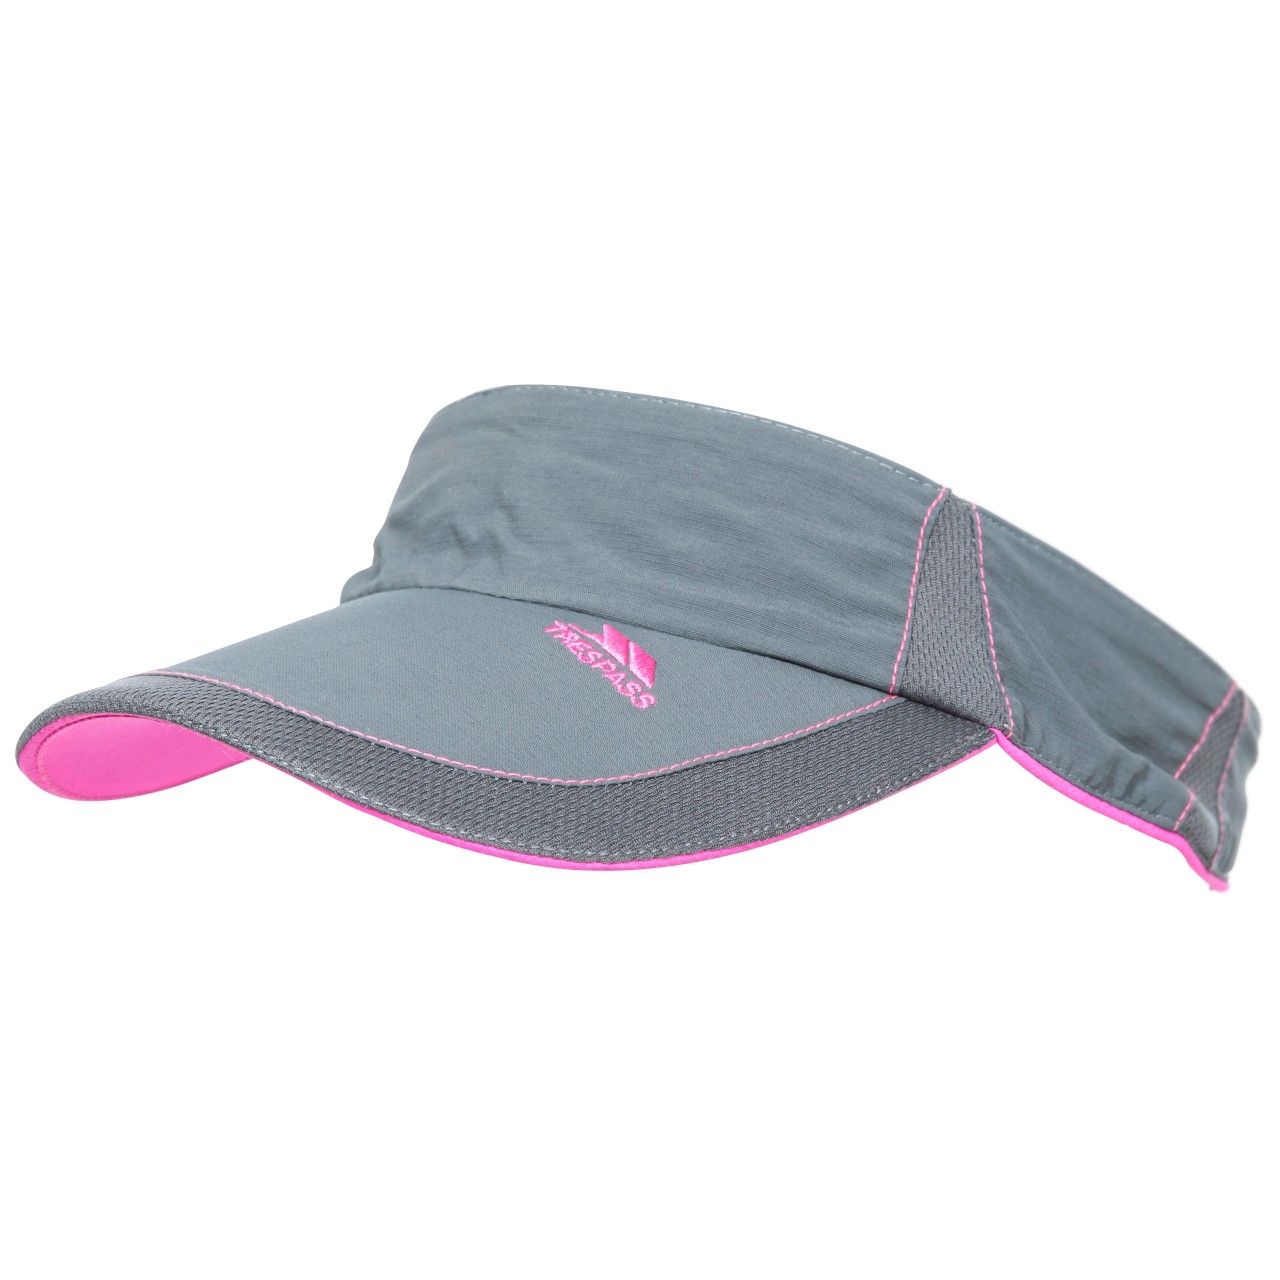 Unisex visor. Moulded peak. Reflective details. Contrast trims. Adjustable strap. 100% Polyester.